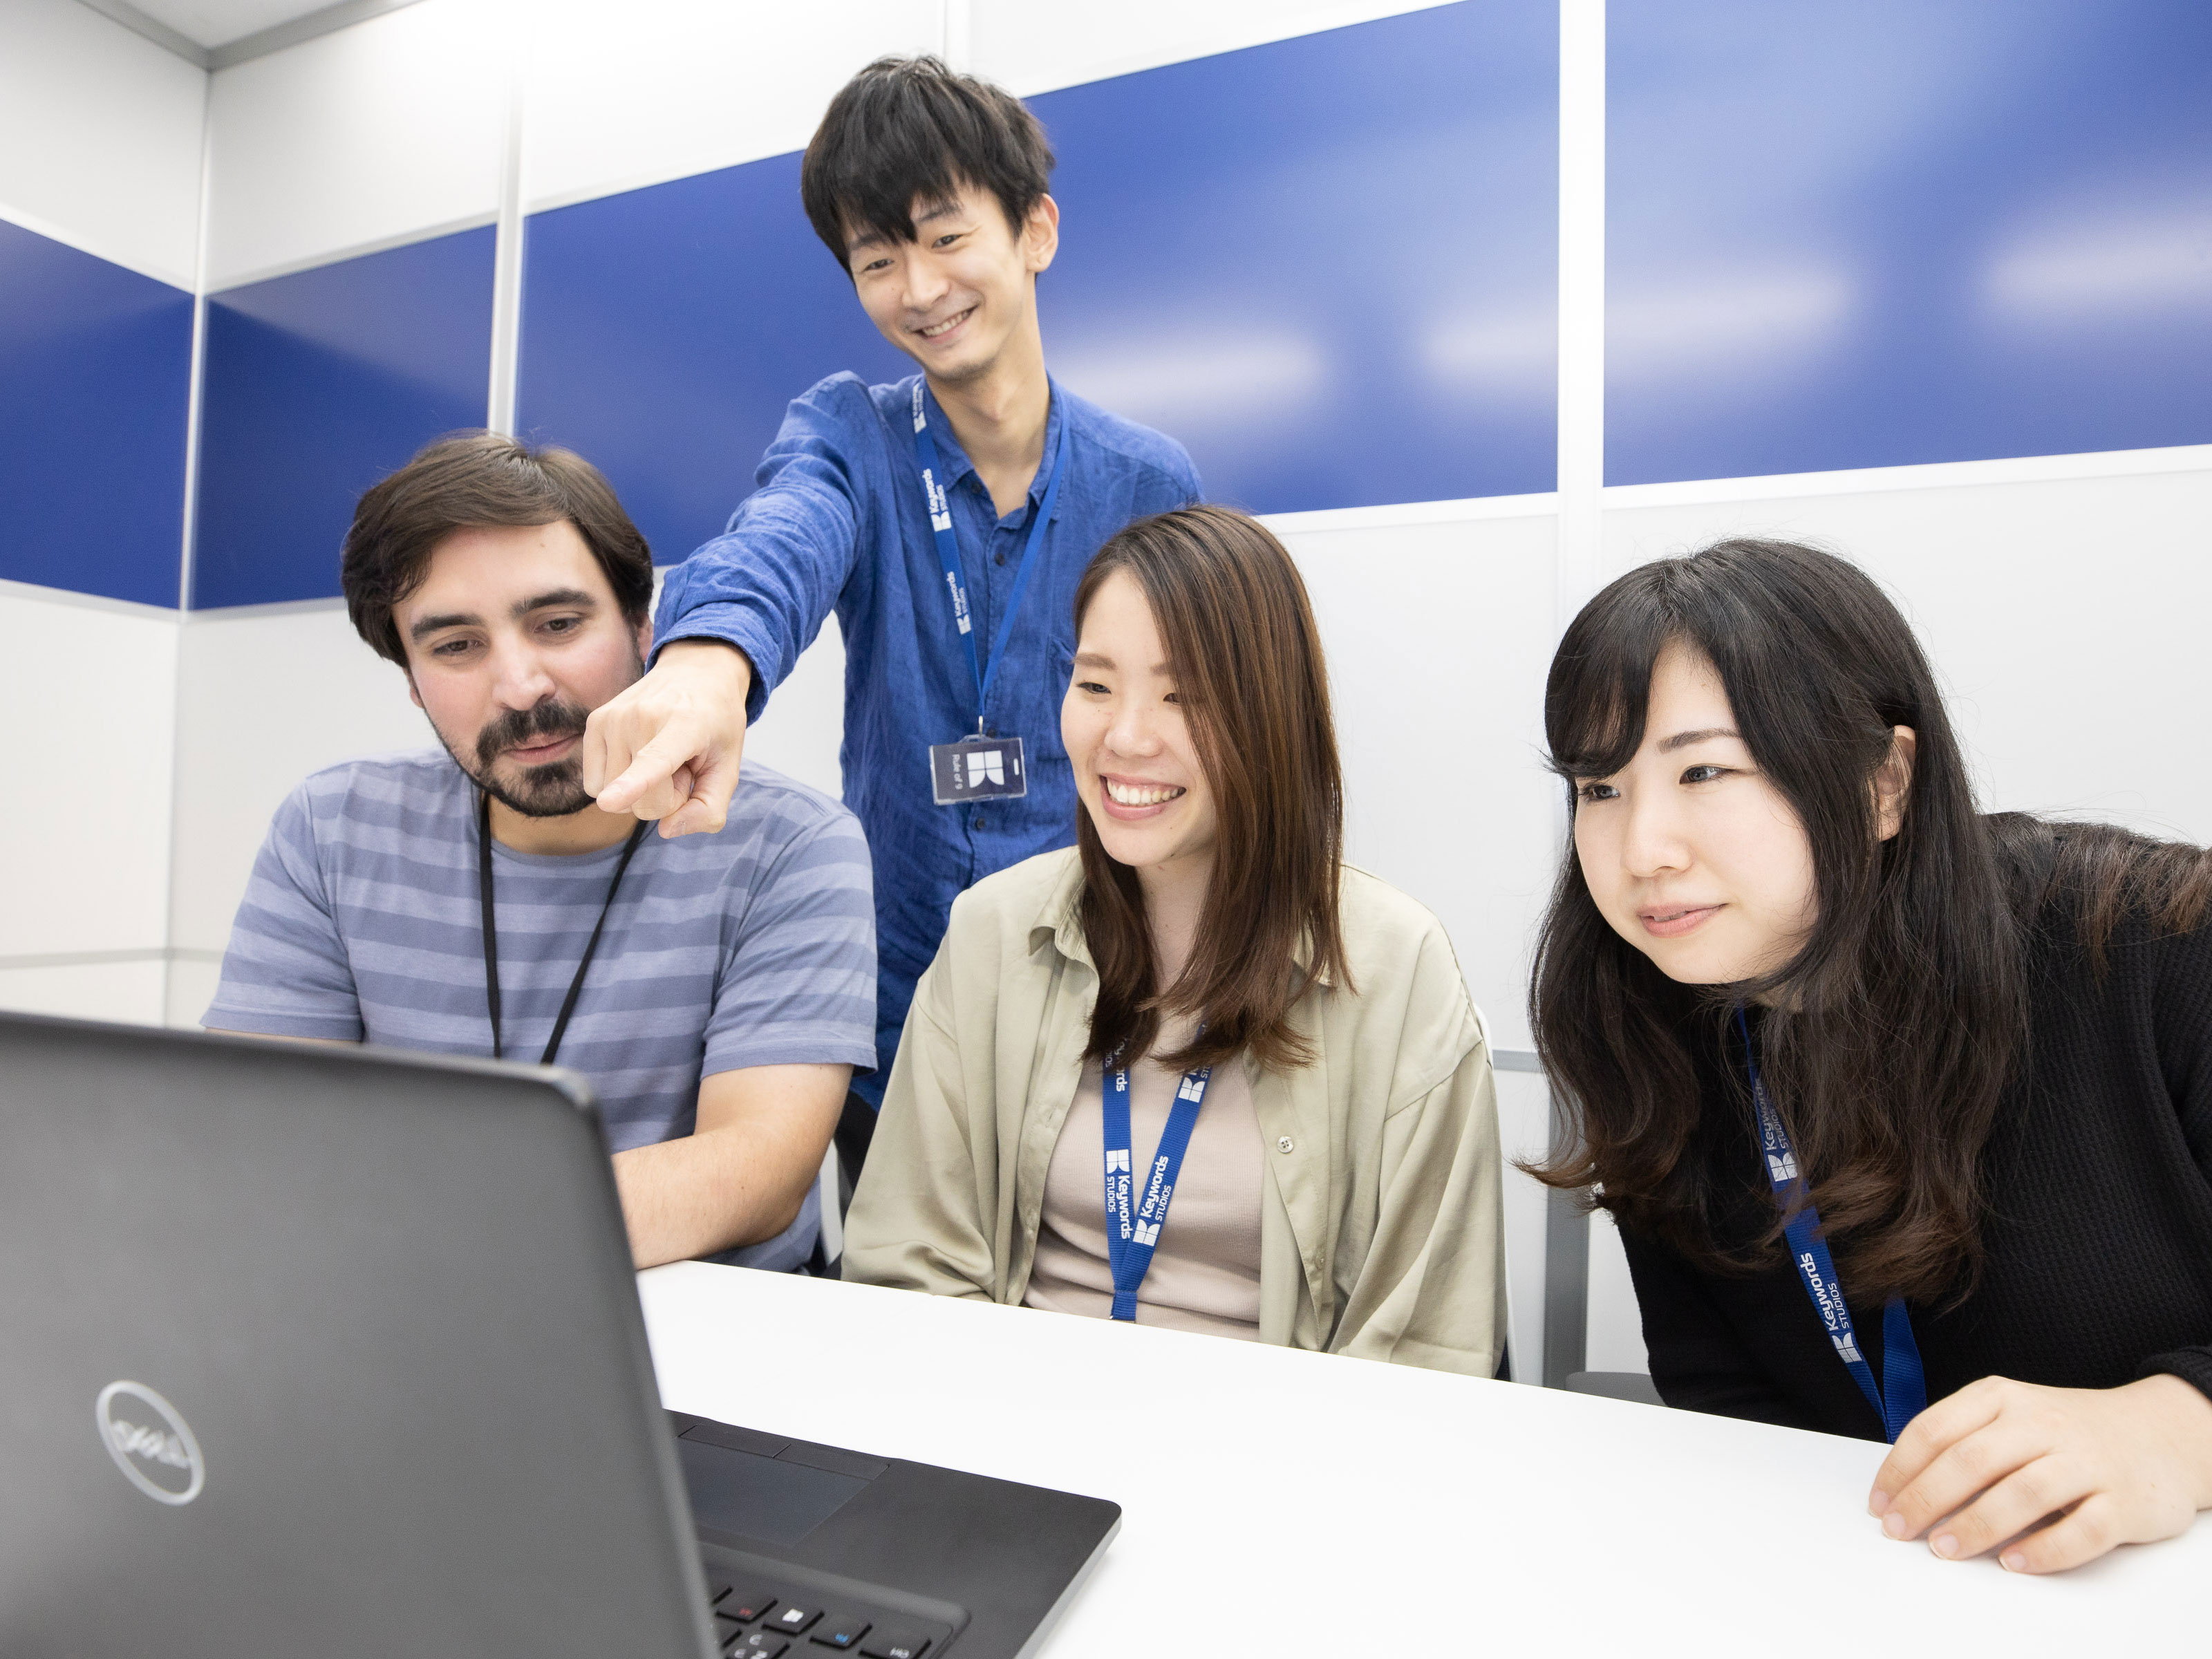 キーワーズ・インターナショナルの東京オフィスには、仕事を楽しみながらお互いを支え合い、成長し合える職場環境がある。ゲームの魅力をエンドユーザーへ届けるため、「Can Do」の精神のもと、一人ひとりの能力を最大限に発揮できるようサポートする体制もある。